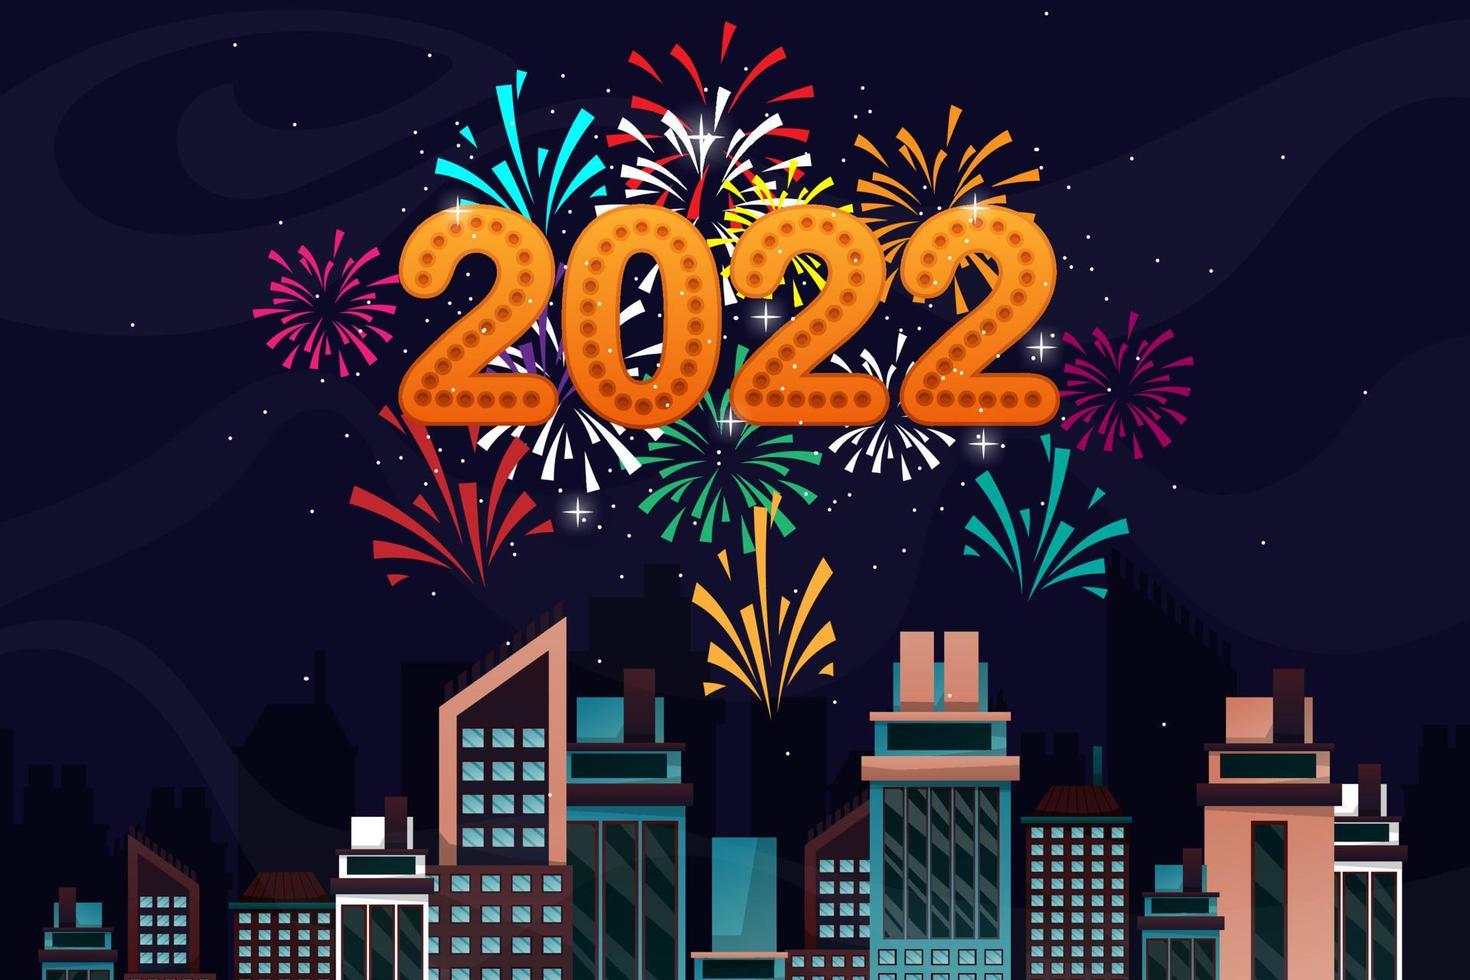 saluto del nuovo anno 2022 cartone animato con lettering illustrazione vettoriale